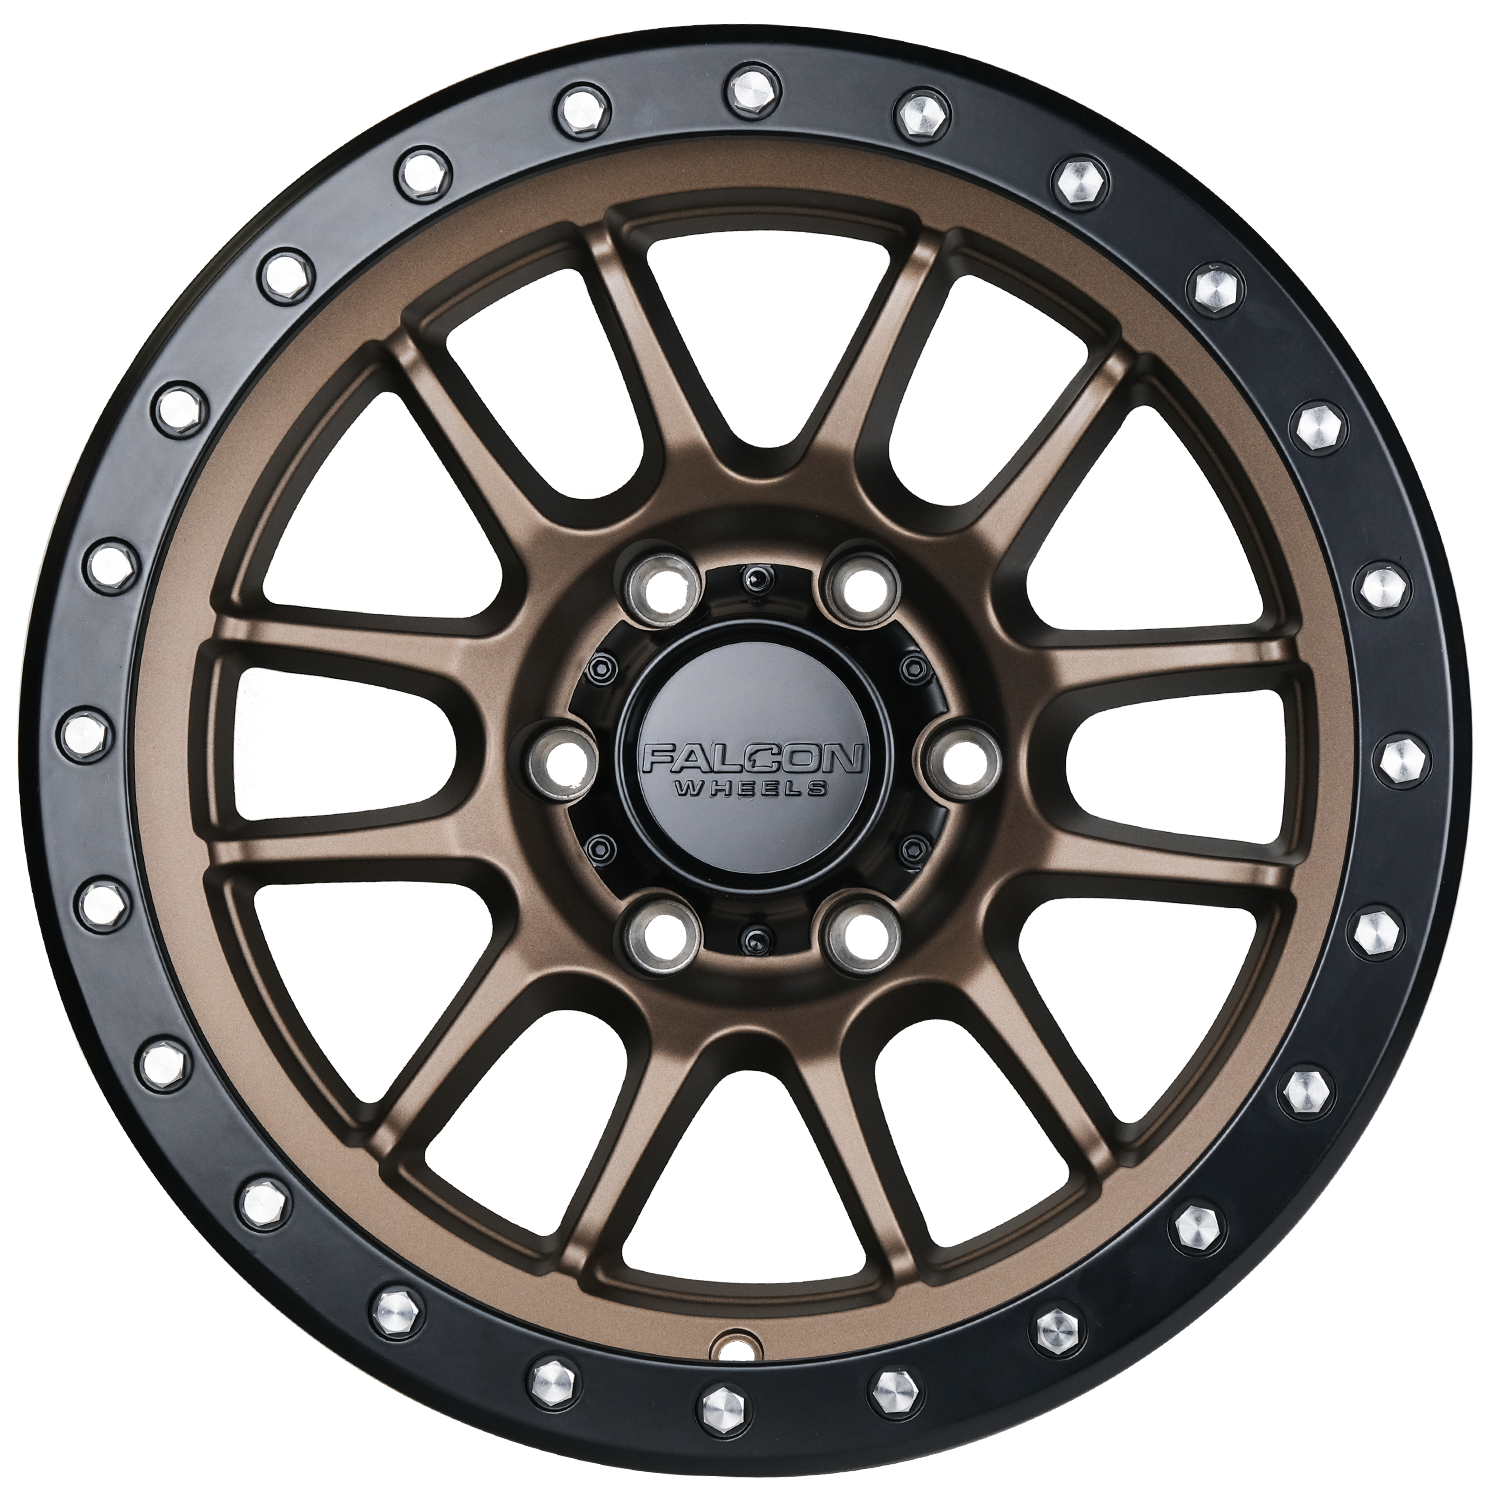 T7 - Matte Bronze 17x9 - Premium Wheels from Falcon Off-Road Wheels - Just $295! Shop now at Falcon Off-Road Wheels 